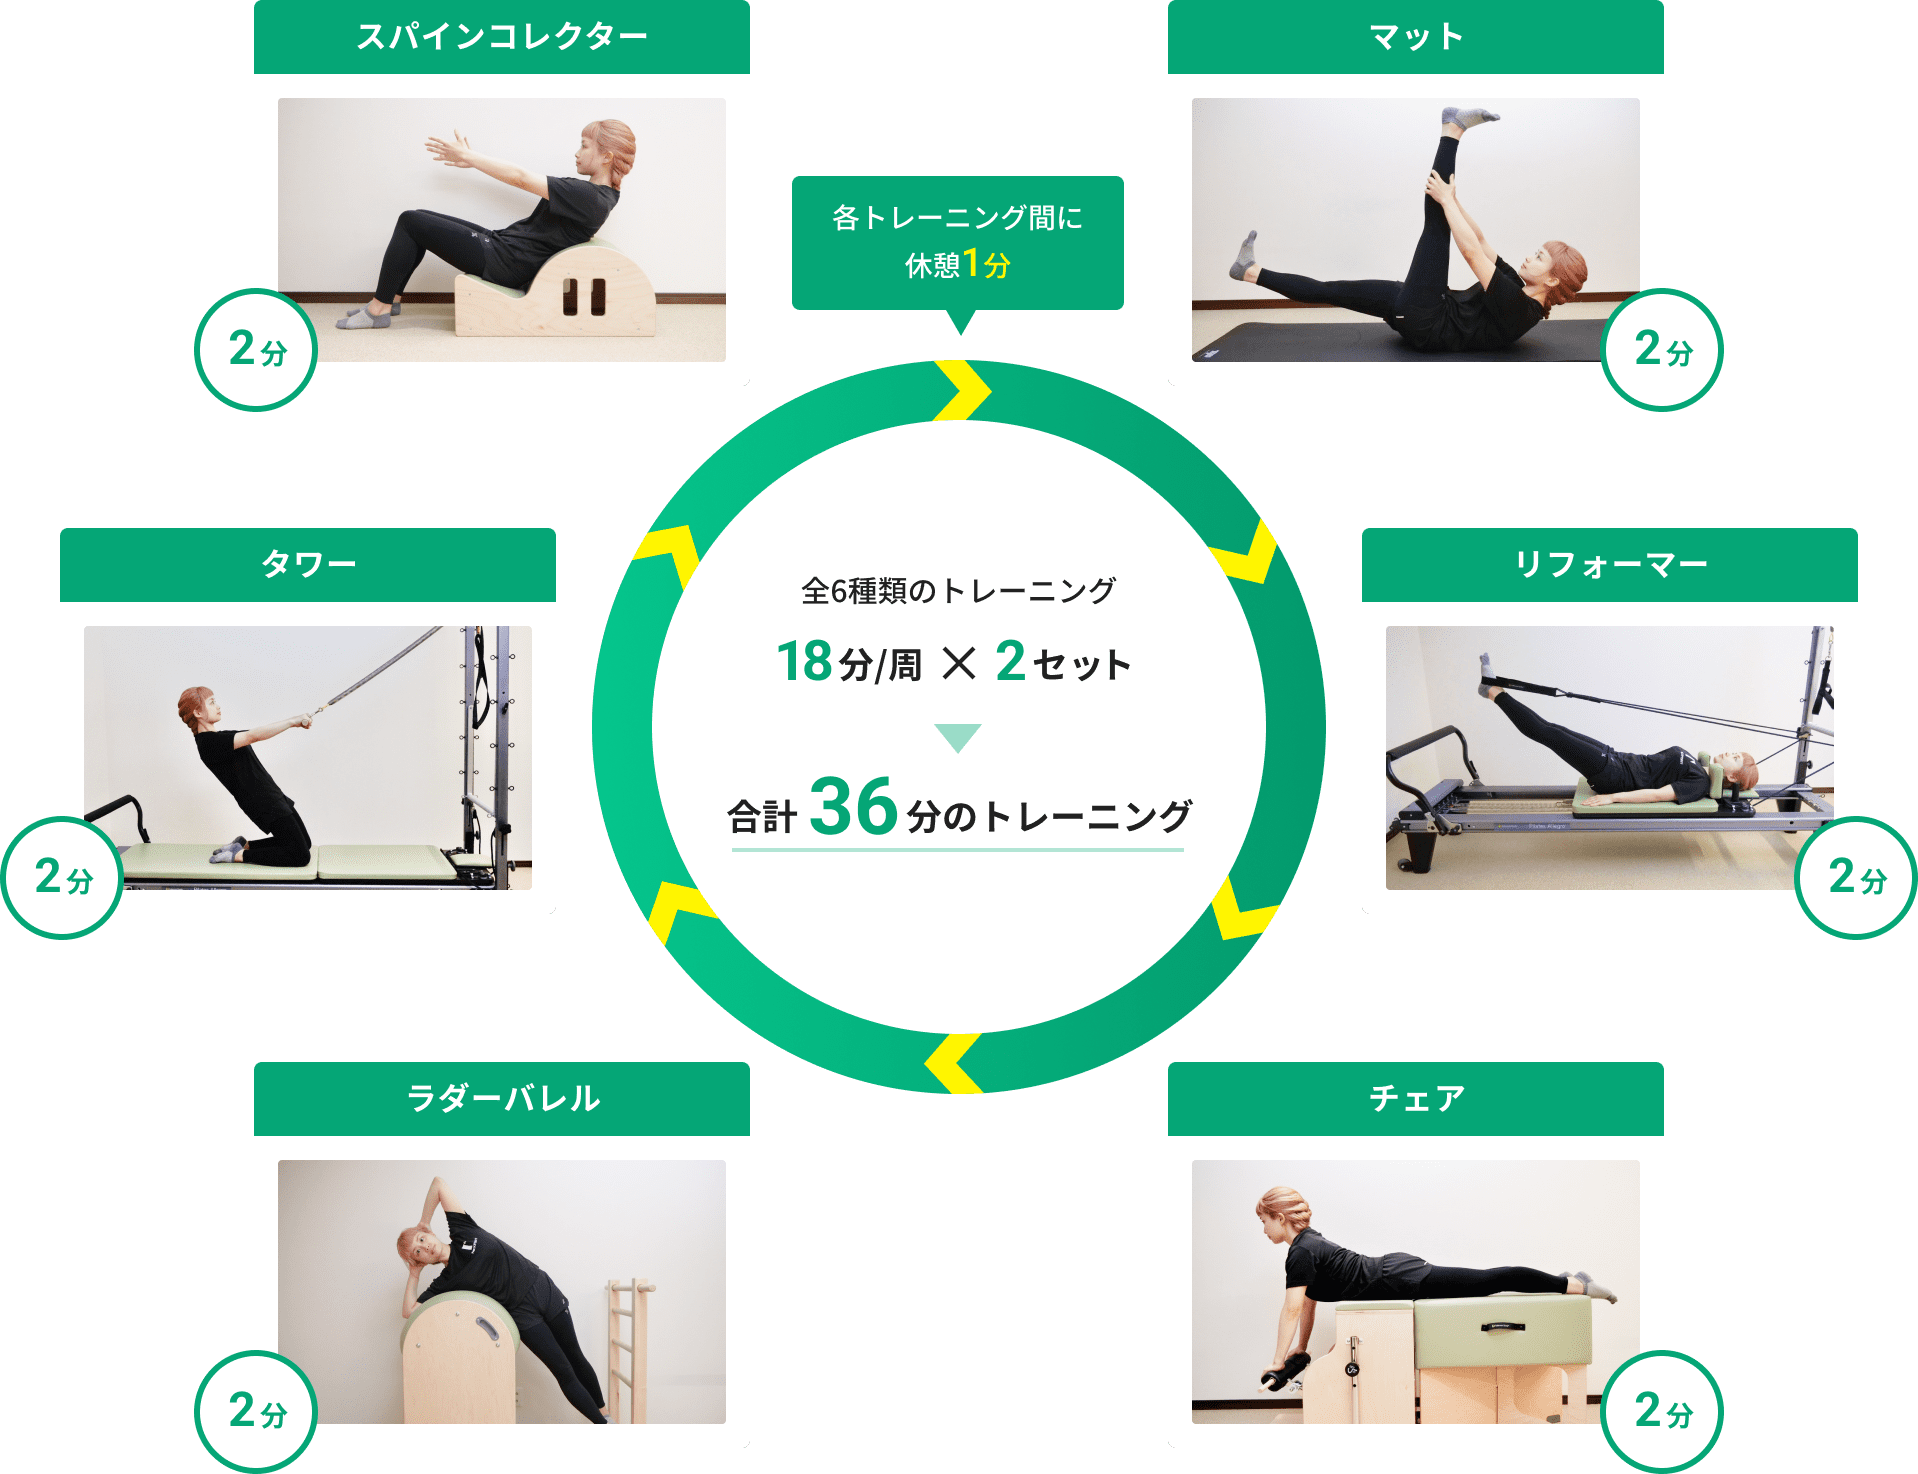 サーキットの図：全6種類のトレーニングが円形に並び、2分のトレーニングと1分の休憩を繰り返している